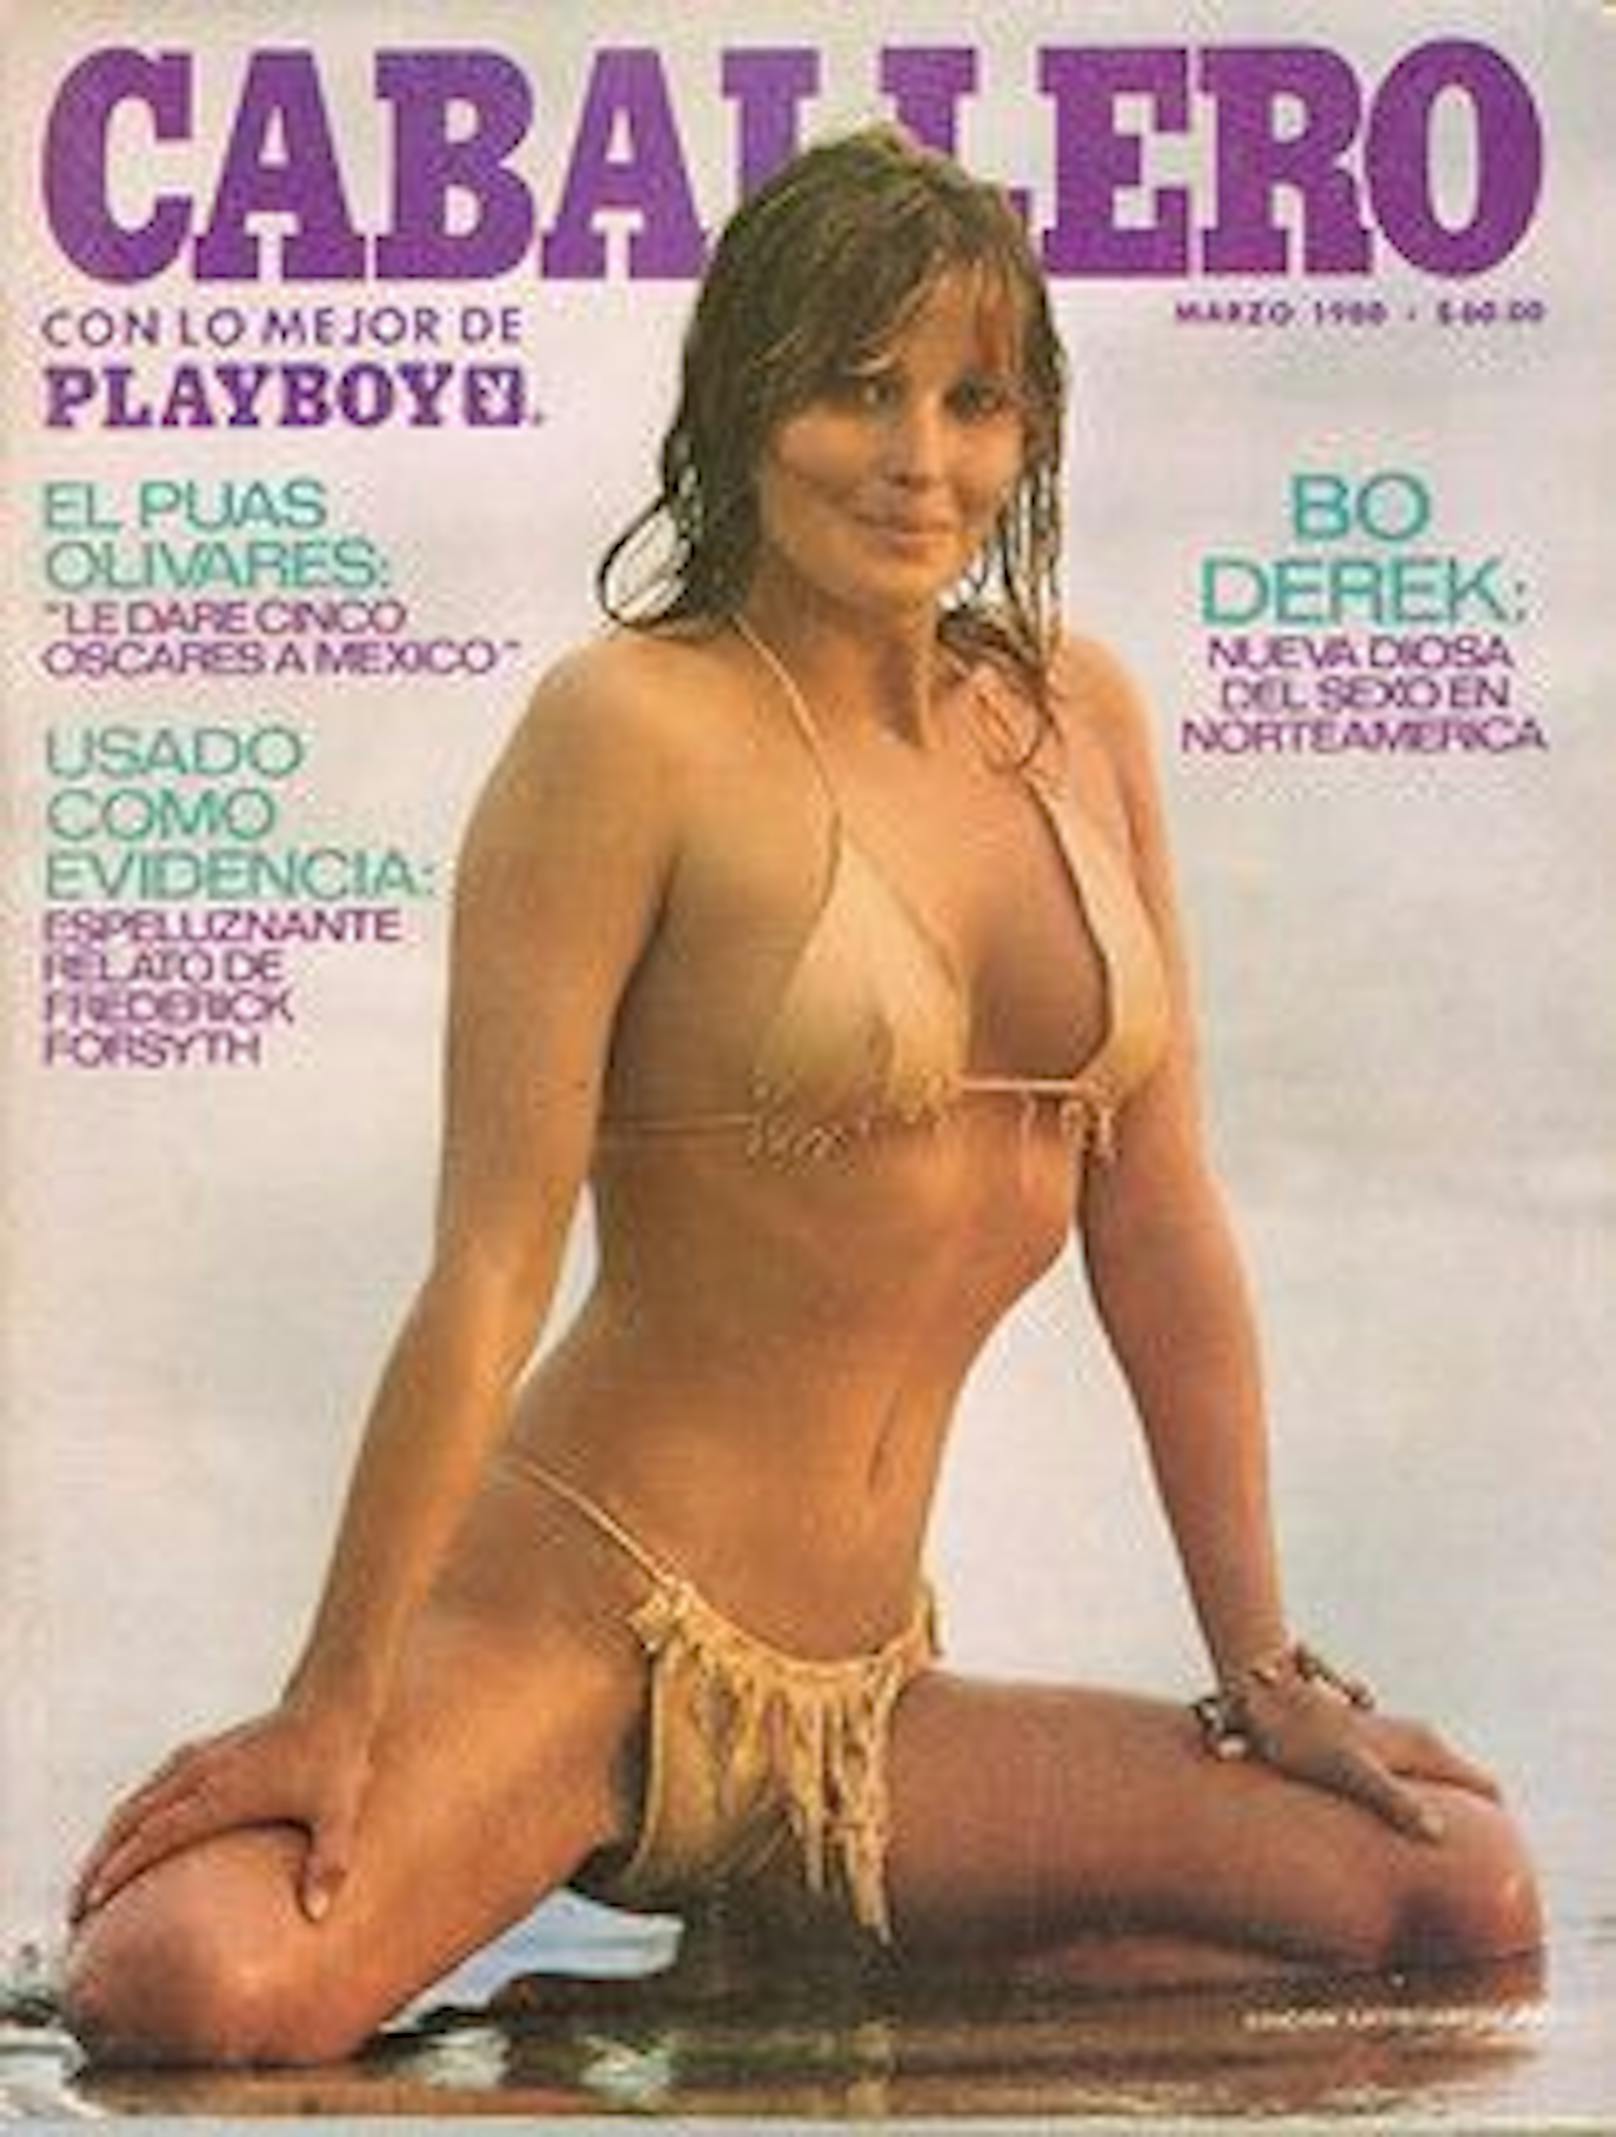 Bo Derek im Tarzan-Outfit auf dem Cover des "Playboy".